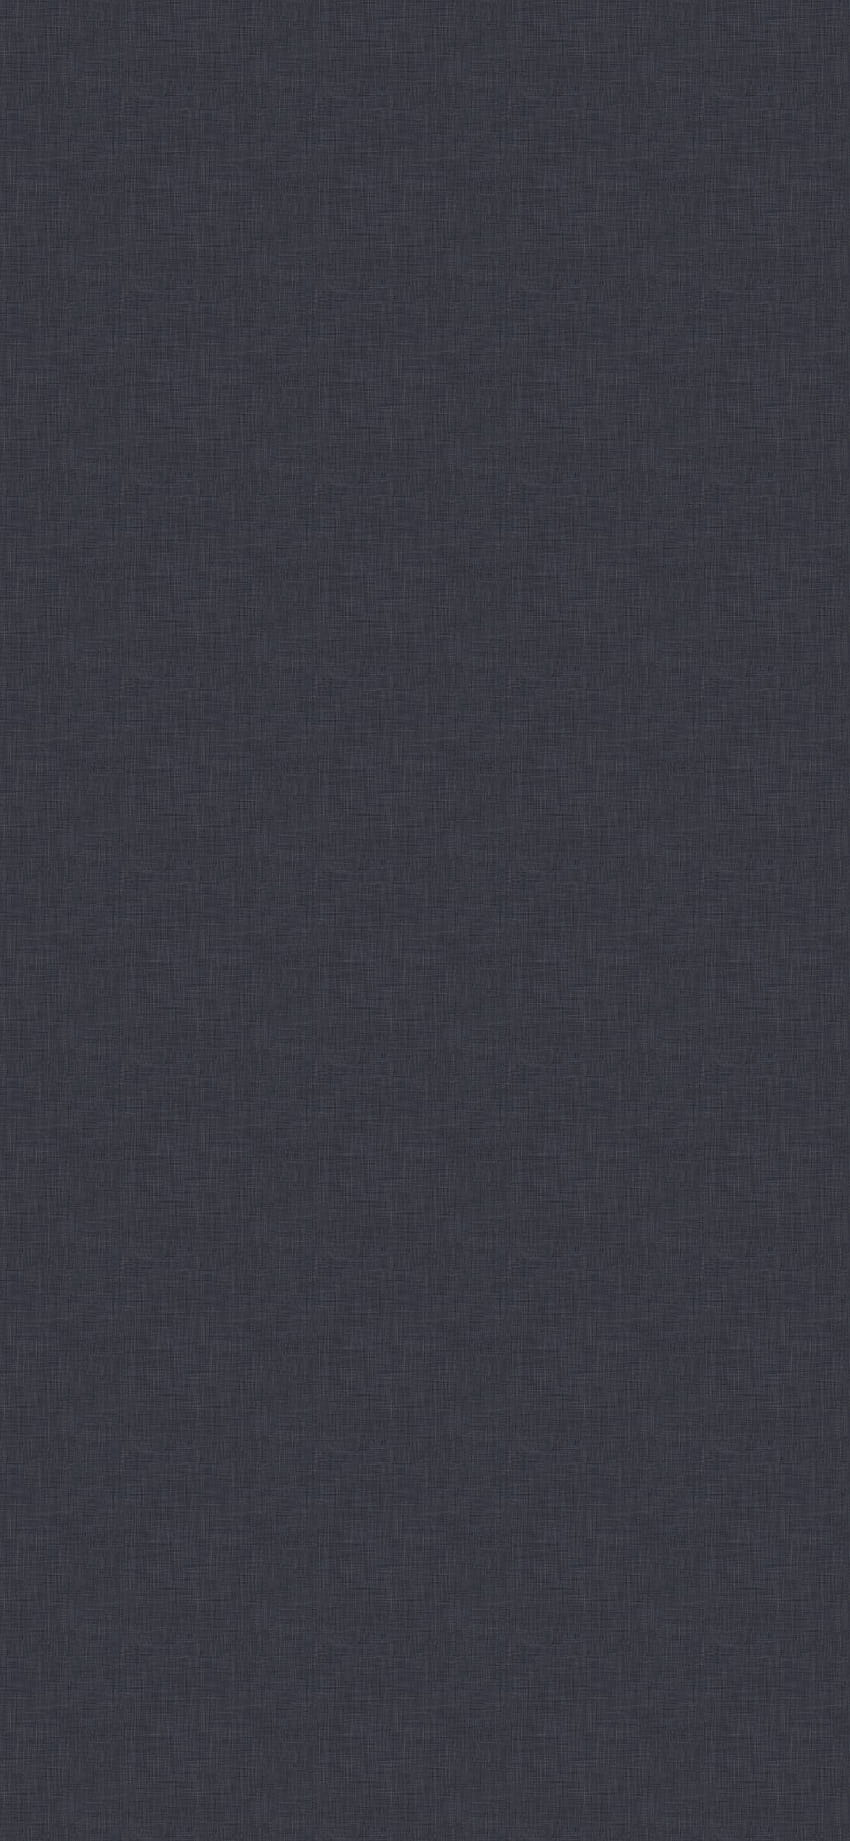 iPhone6paperscom  iPhone 6 wallpaper  sj61graydarkgradationblur